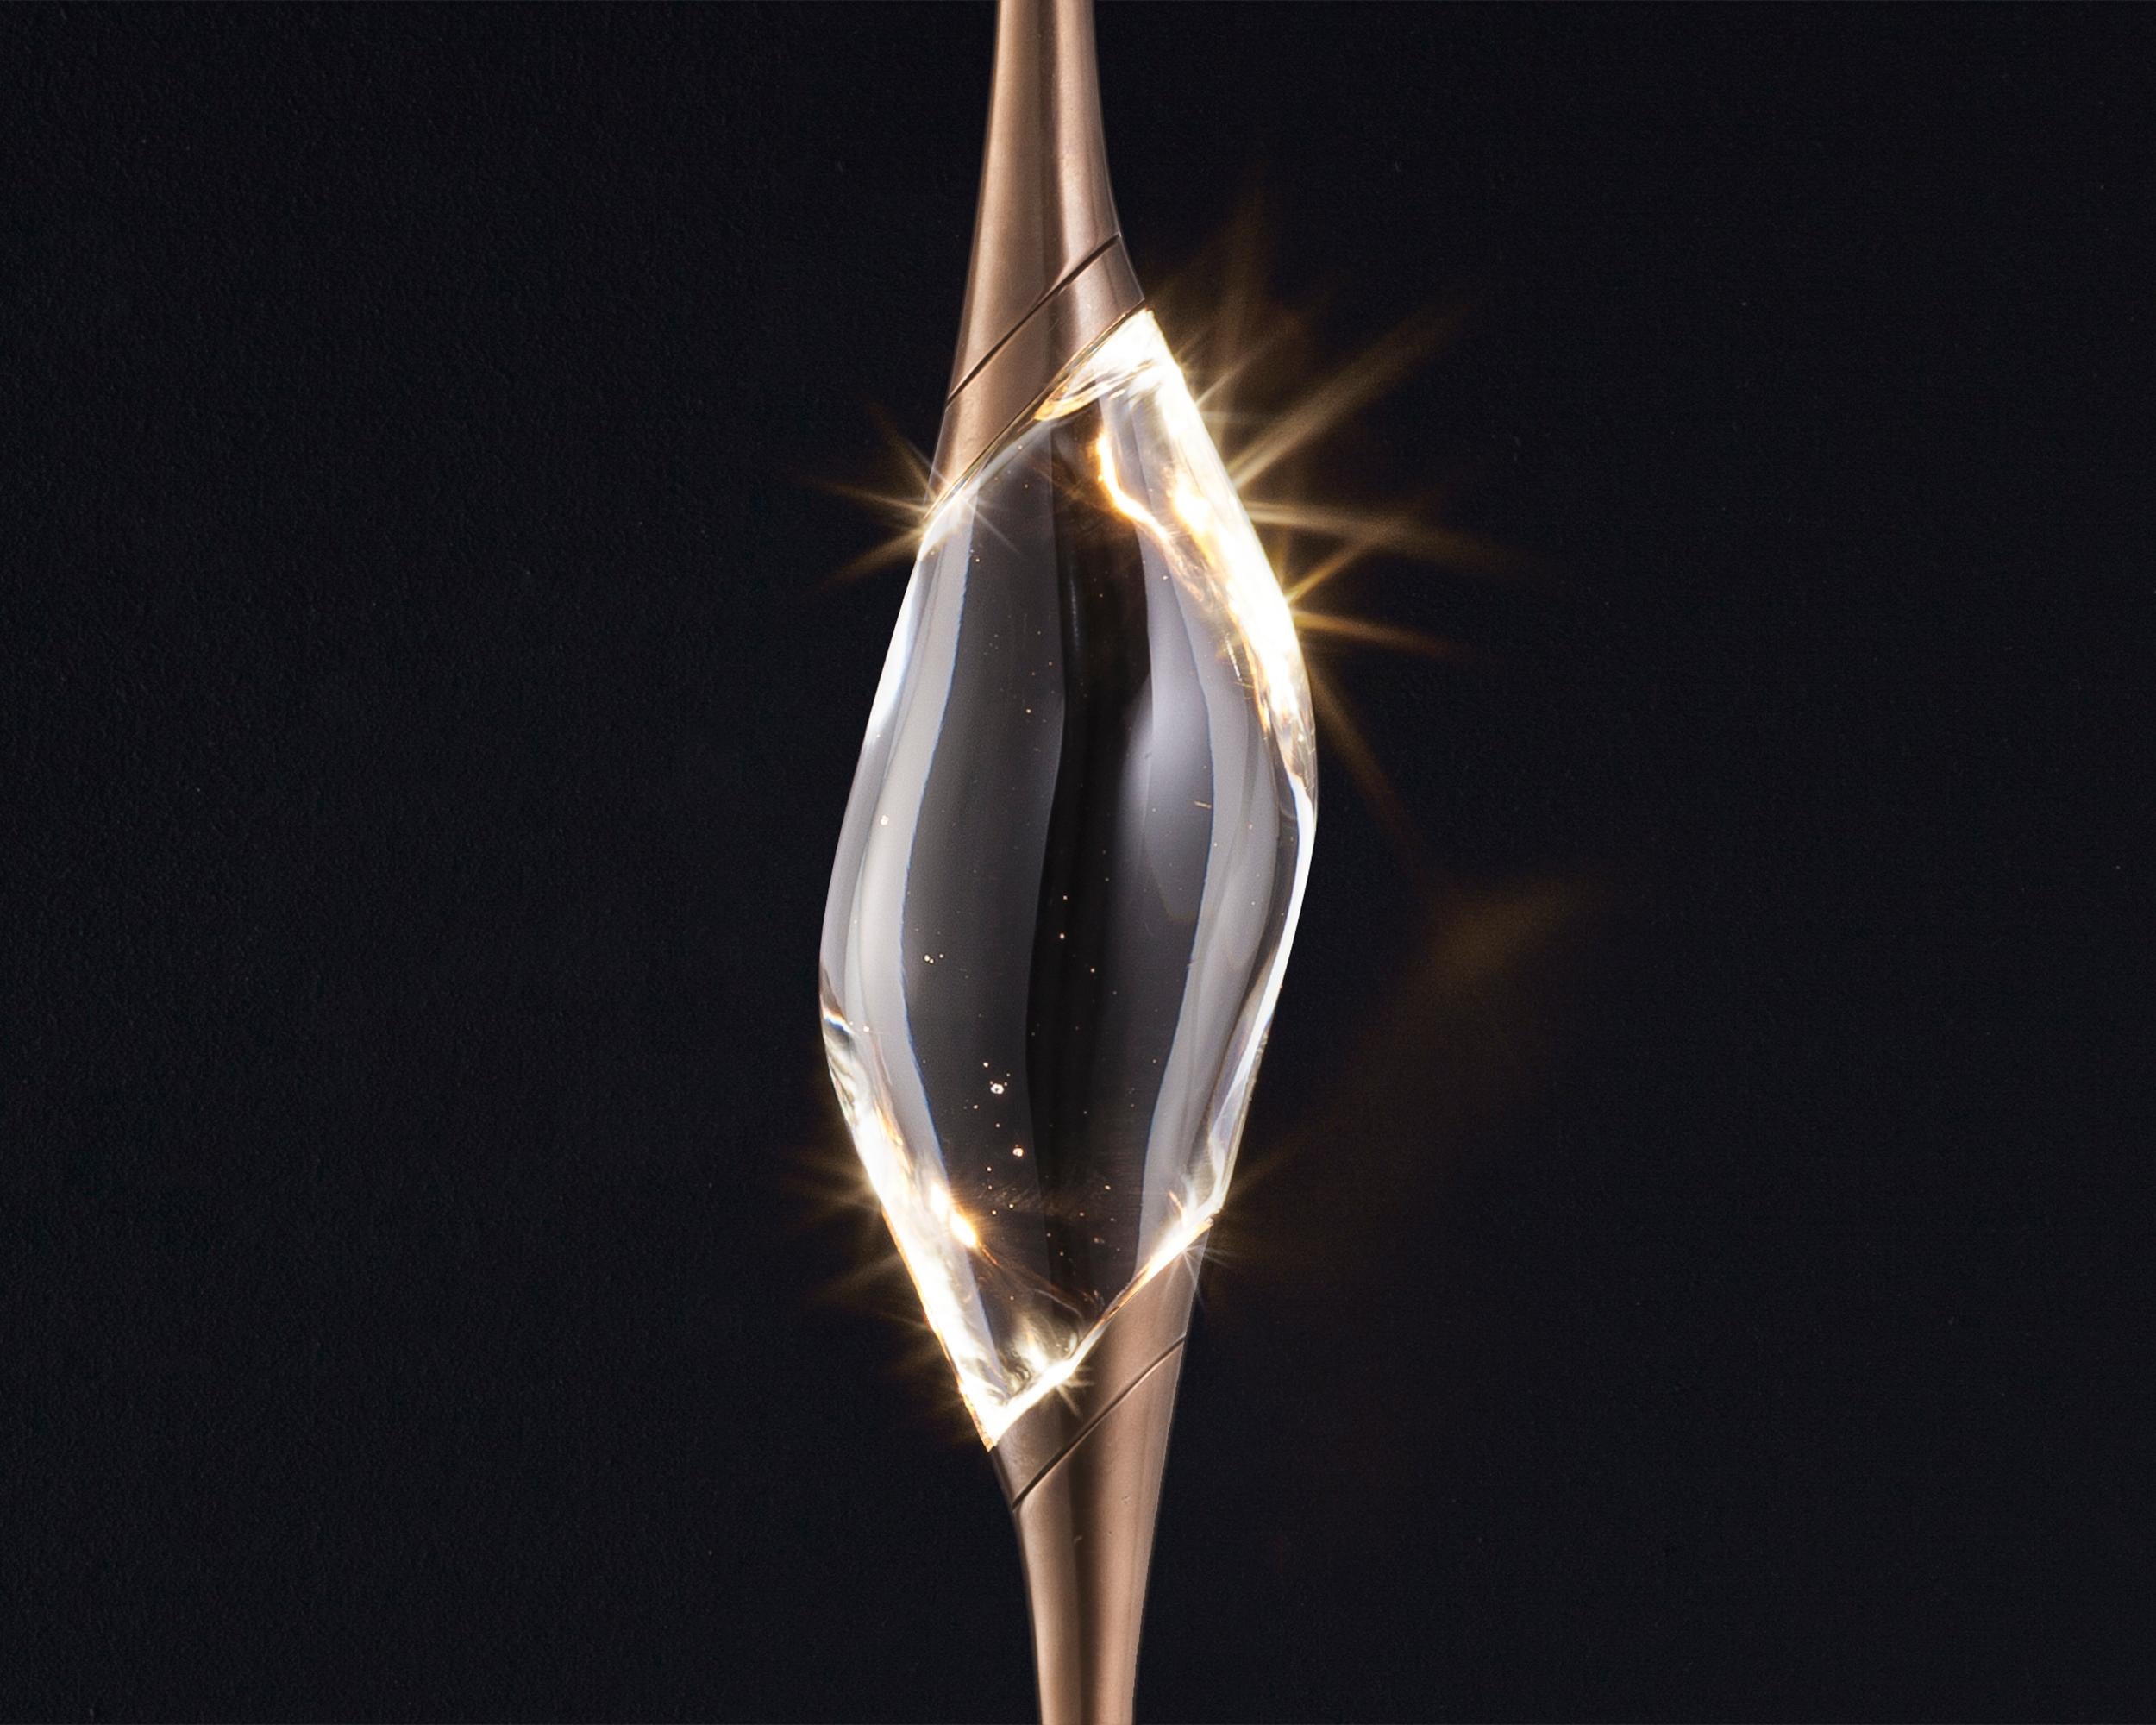 Die Il Pezzo 12 Stehleuchte hat eine atemberaubende kreisförmige Form, die die drei Lichtquellen in ihrer endlosen Rotation trägt und von einem Marmorsockel getragen wird, der die
seine Sauberkeit und Reinheit. Die drei massiven Kristalle werden